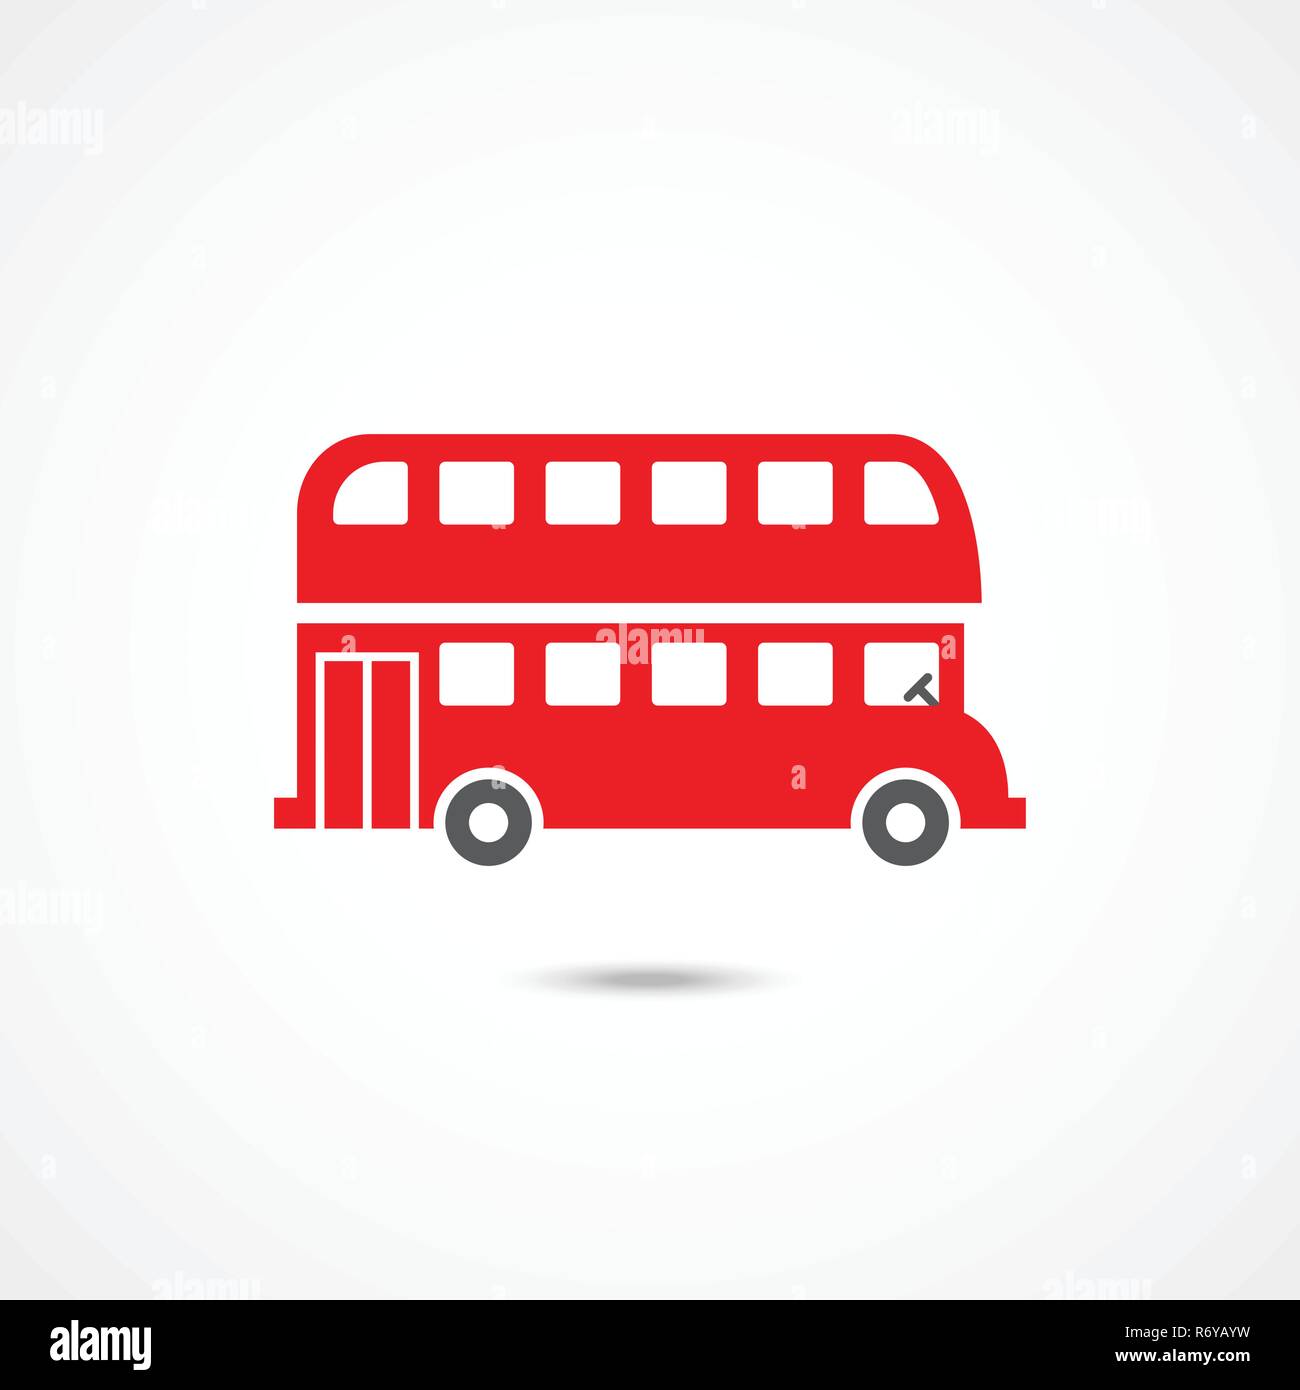 London bus icon Stock Vector